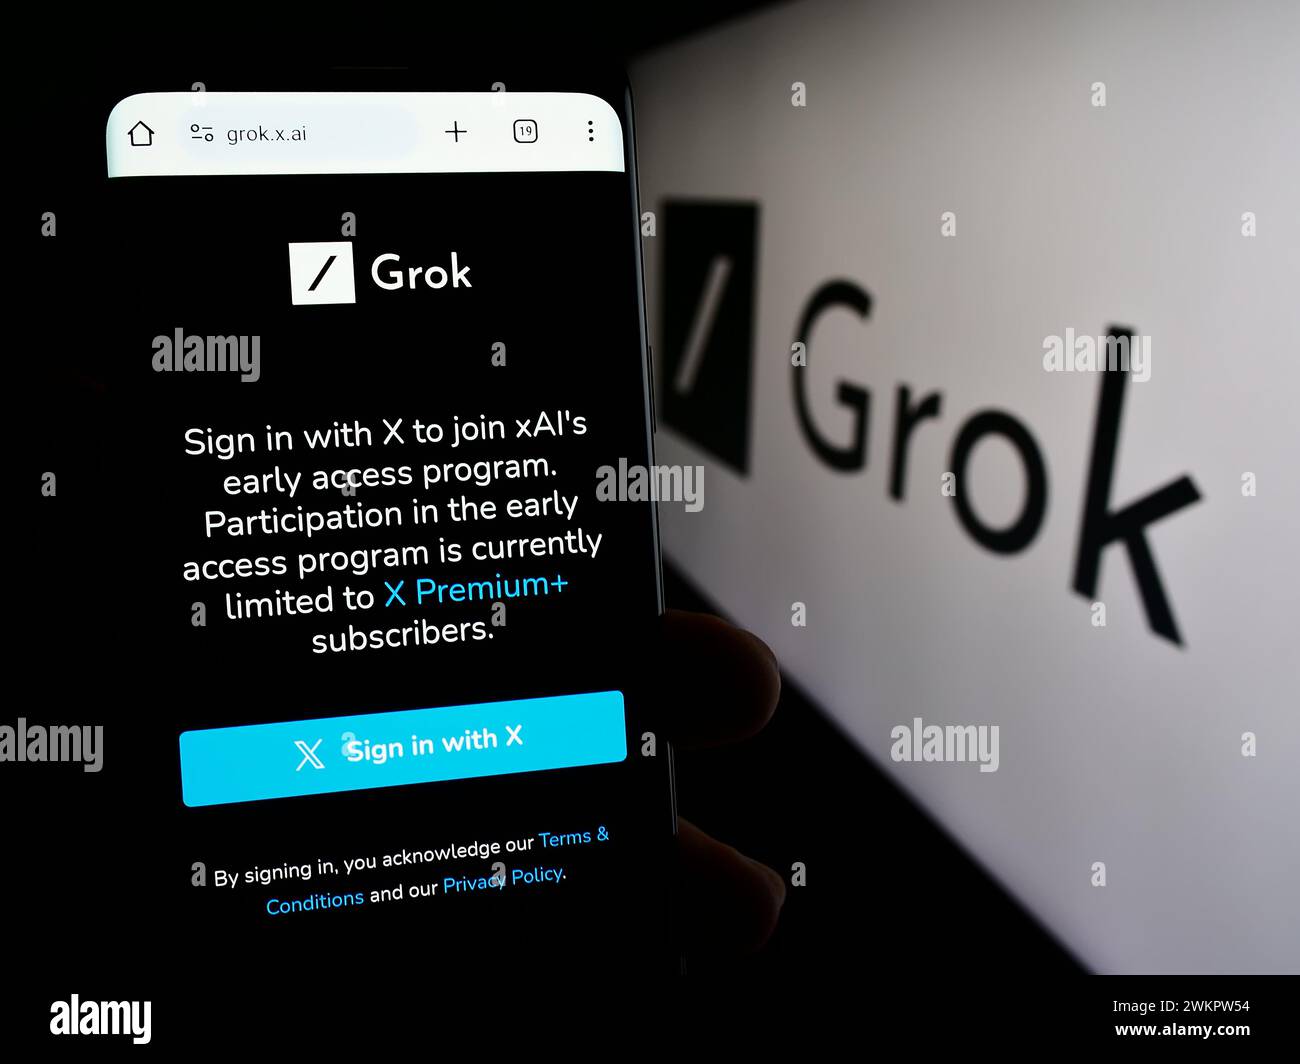 Persona che detiene un cellulare con pagina web del chatbot di intelligenza artificiale generativa Grok (X.ai) con logo. Messa a fuoco al centro del display del telefono. Foto Stock